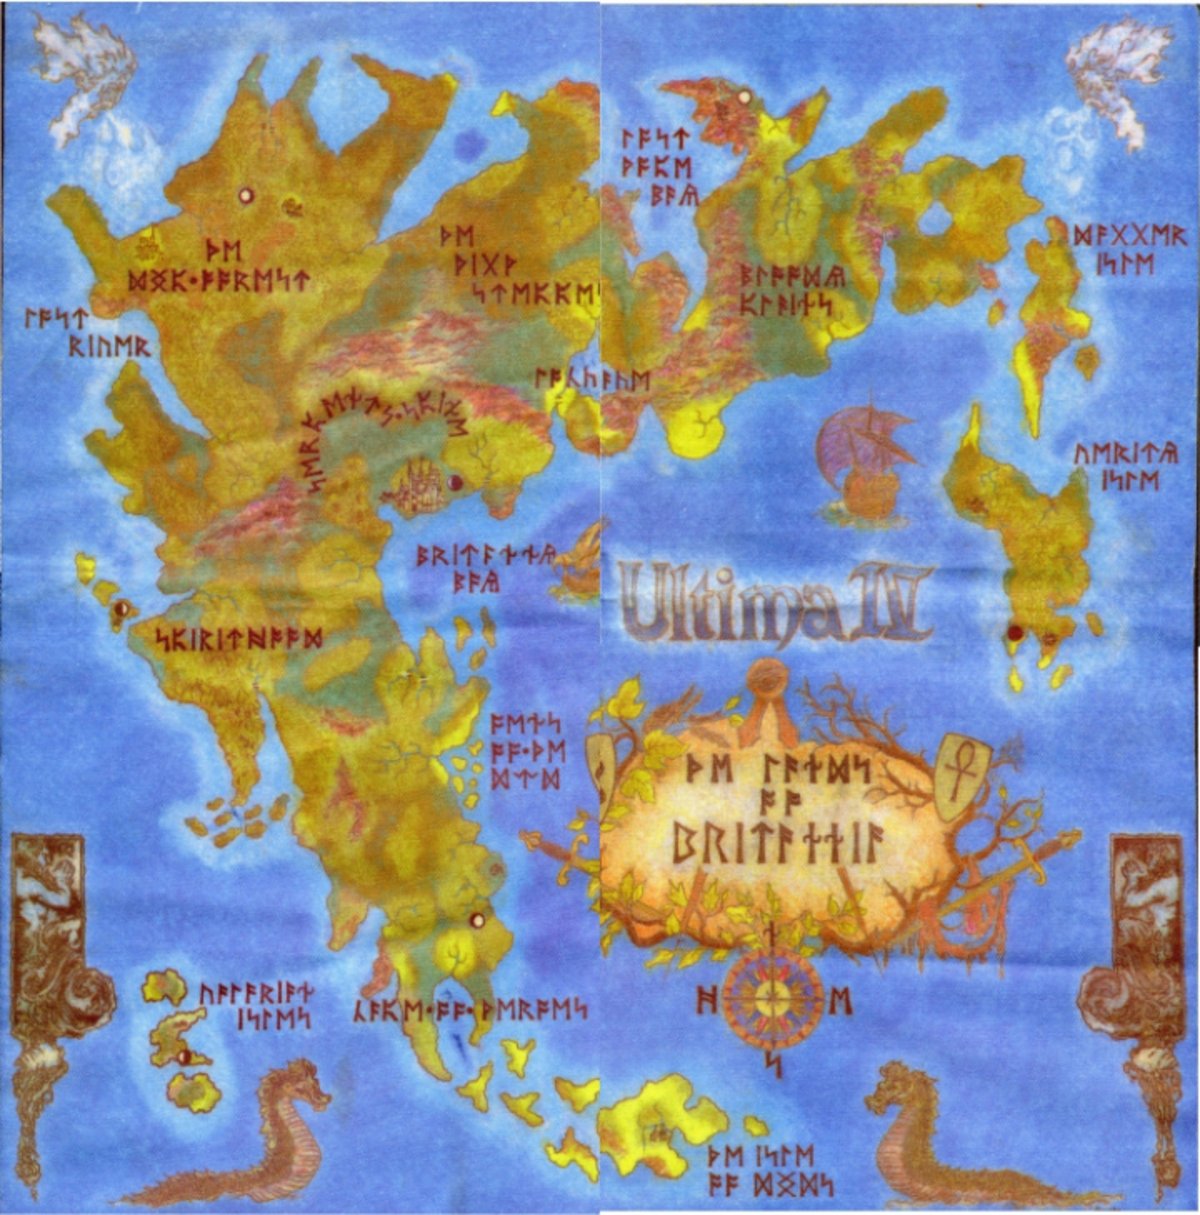 ¿Te acuerdas de Ultima IV: Quest of the Avatar? Pues es el mejor RPG de los 80